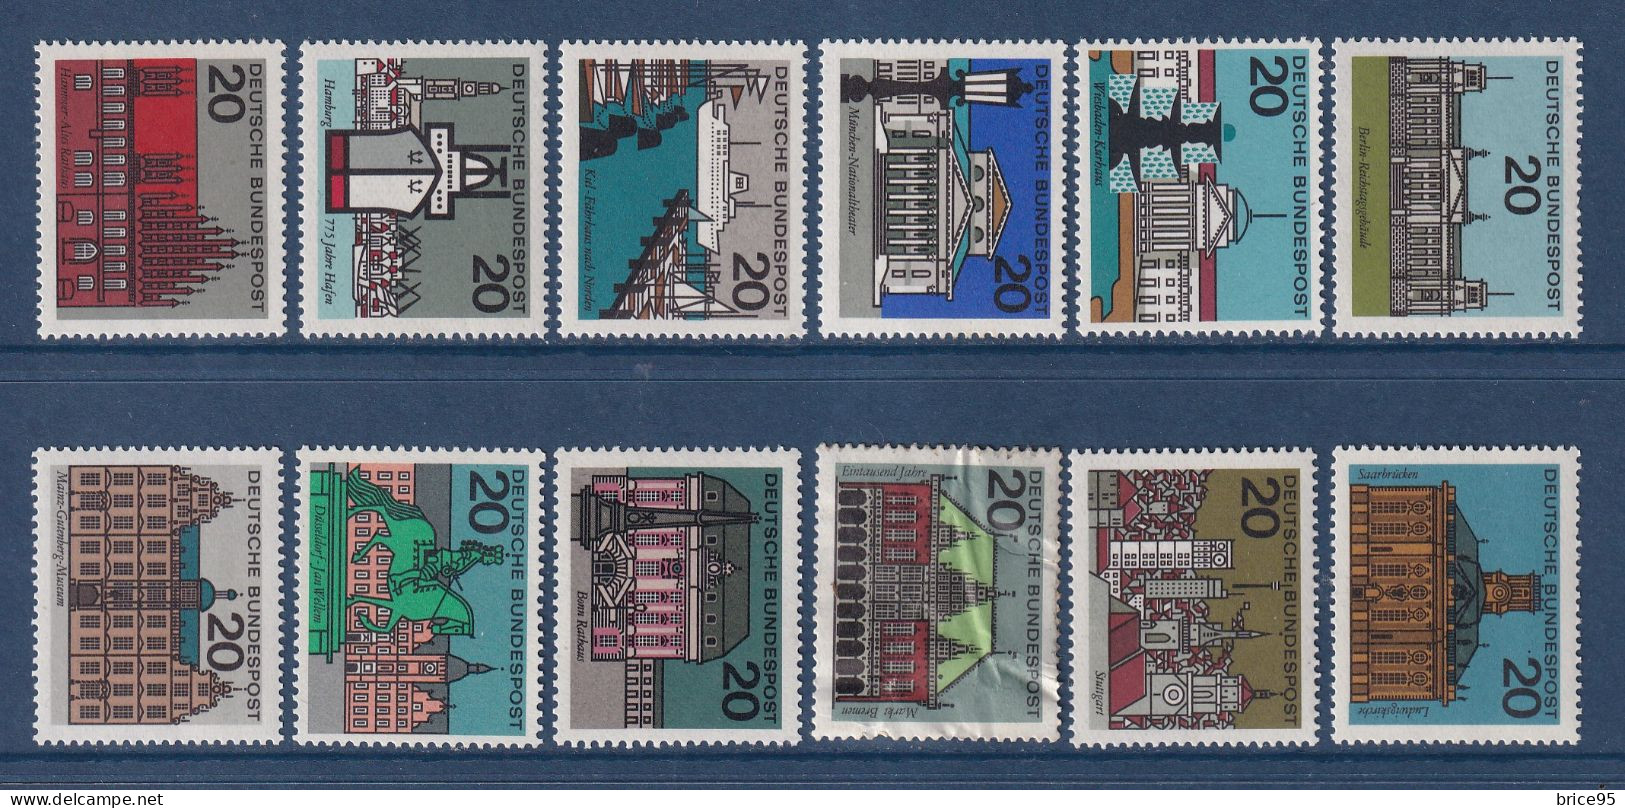 Allemagne Fédérale - YT N° 288 à 295D ** - Neuf Sans Charnière - N° 295B Défectueux - 1964 à 1965 - Unused Stamps